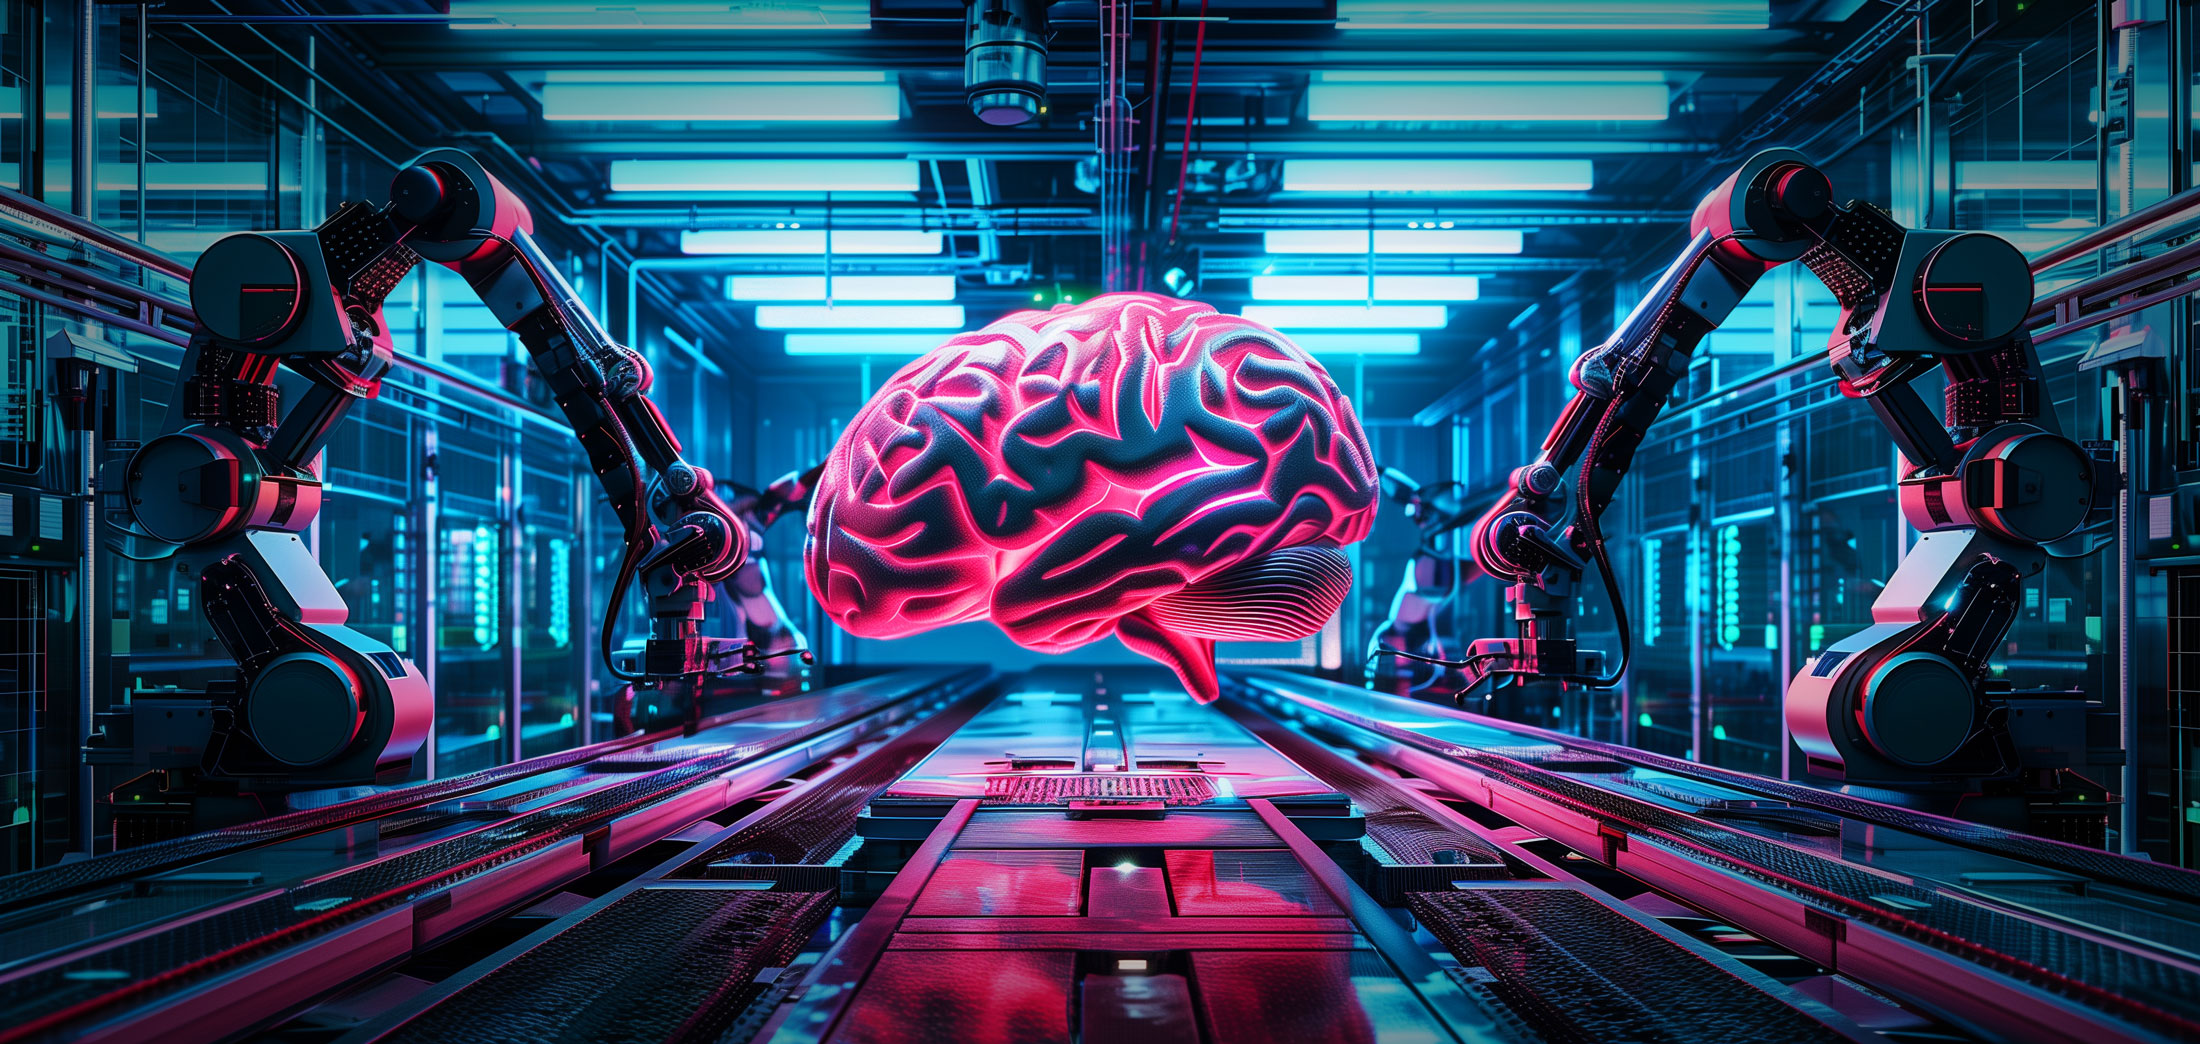 Ein fotorealistisches Bild, das industrielle Roboterarme zeigt, die ein riesiges künstliches Gehirn herstellen.